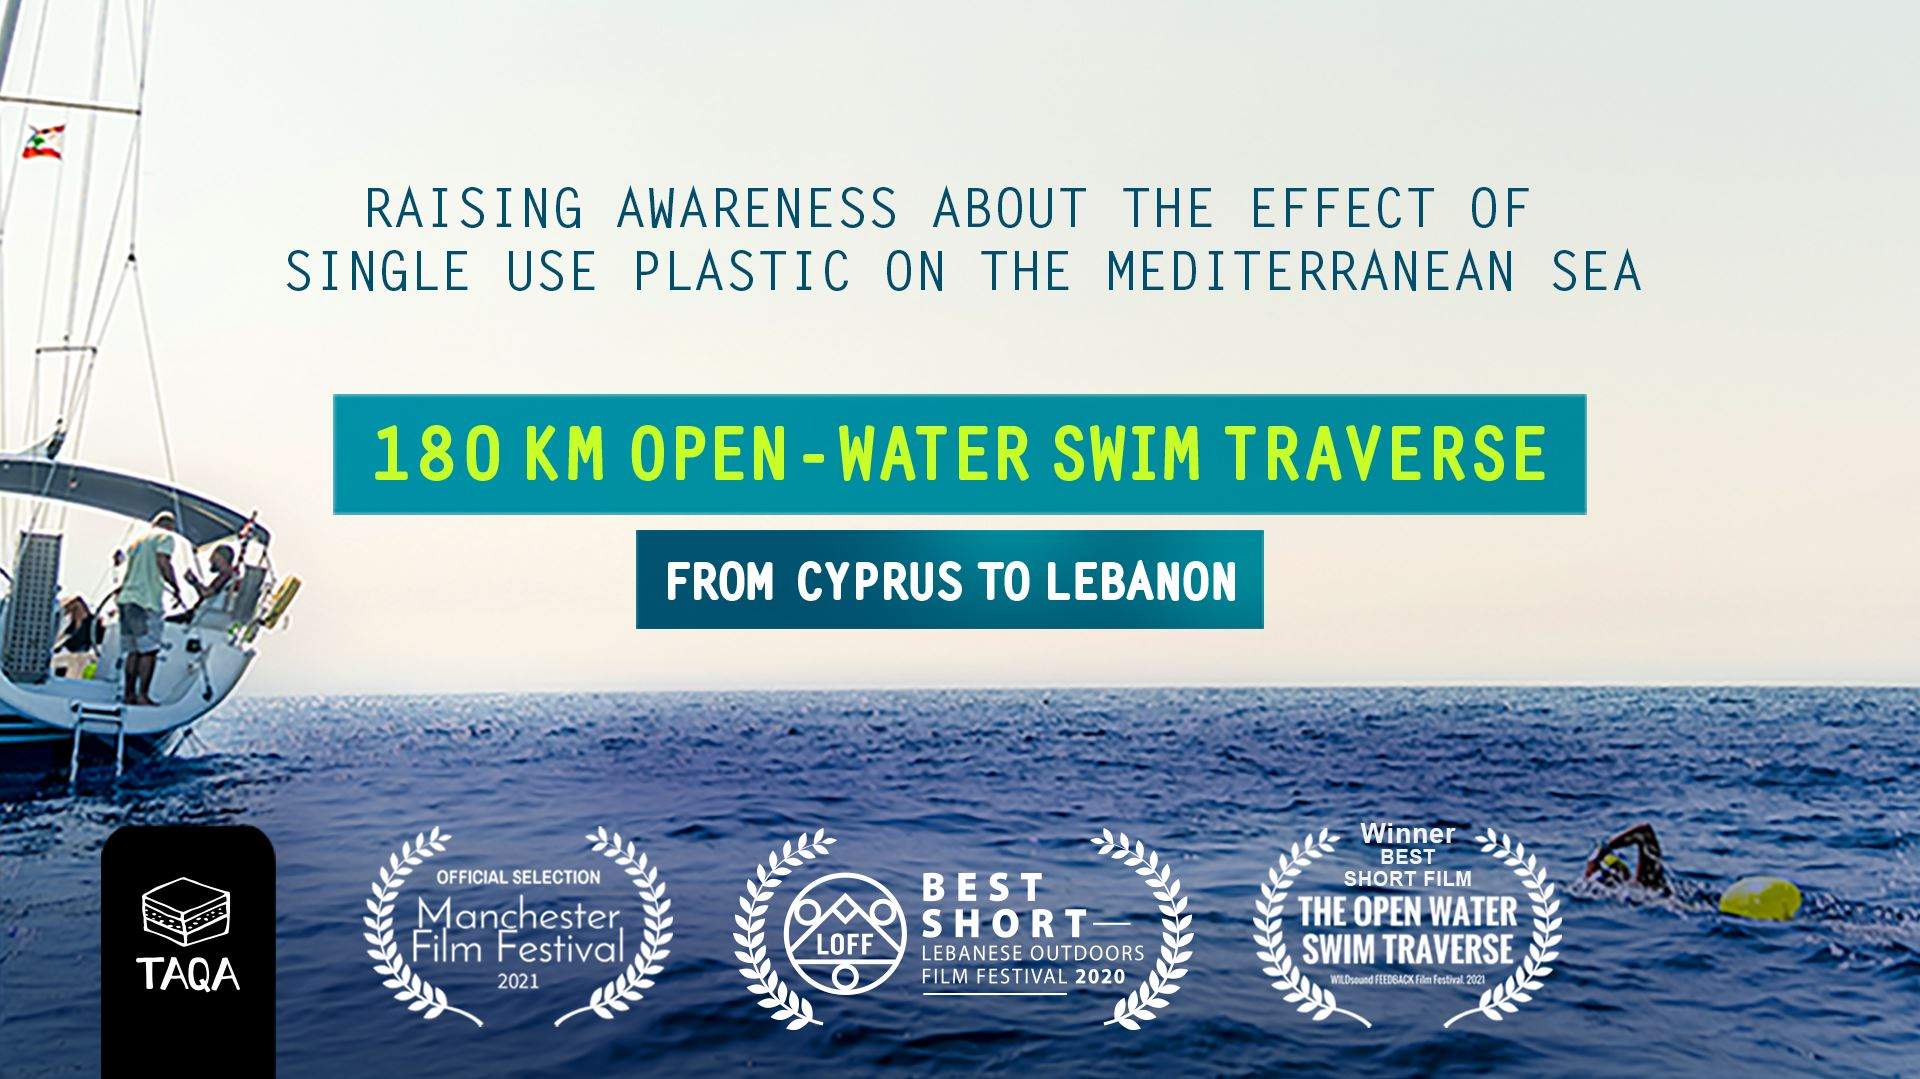 سبّاحون يعبرون البحر من قبرص إلى لبنان لنشر الوعي حول التأثير الضار للمواد البلاستيكية التي تُرمى في البحر المتوسط